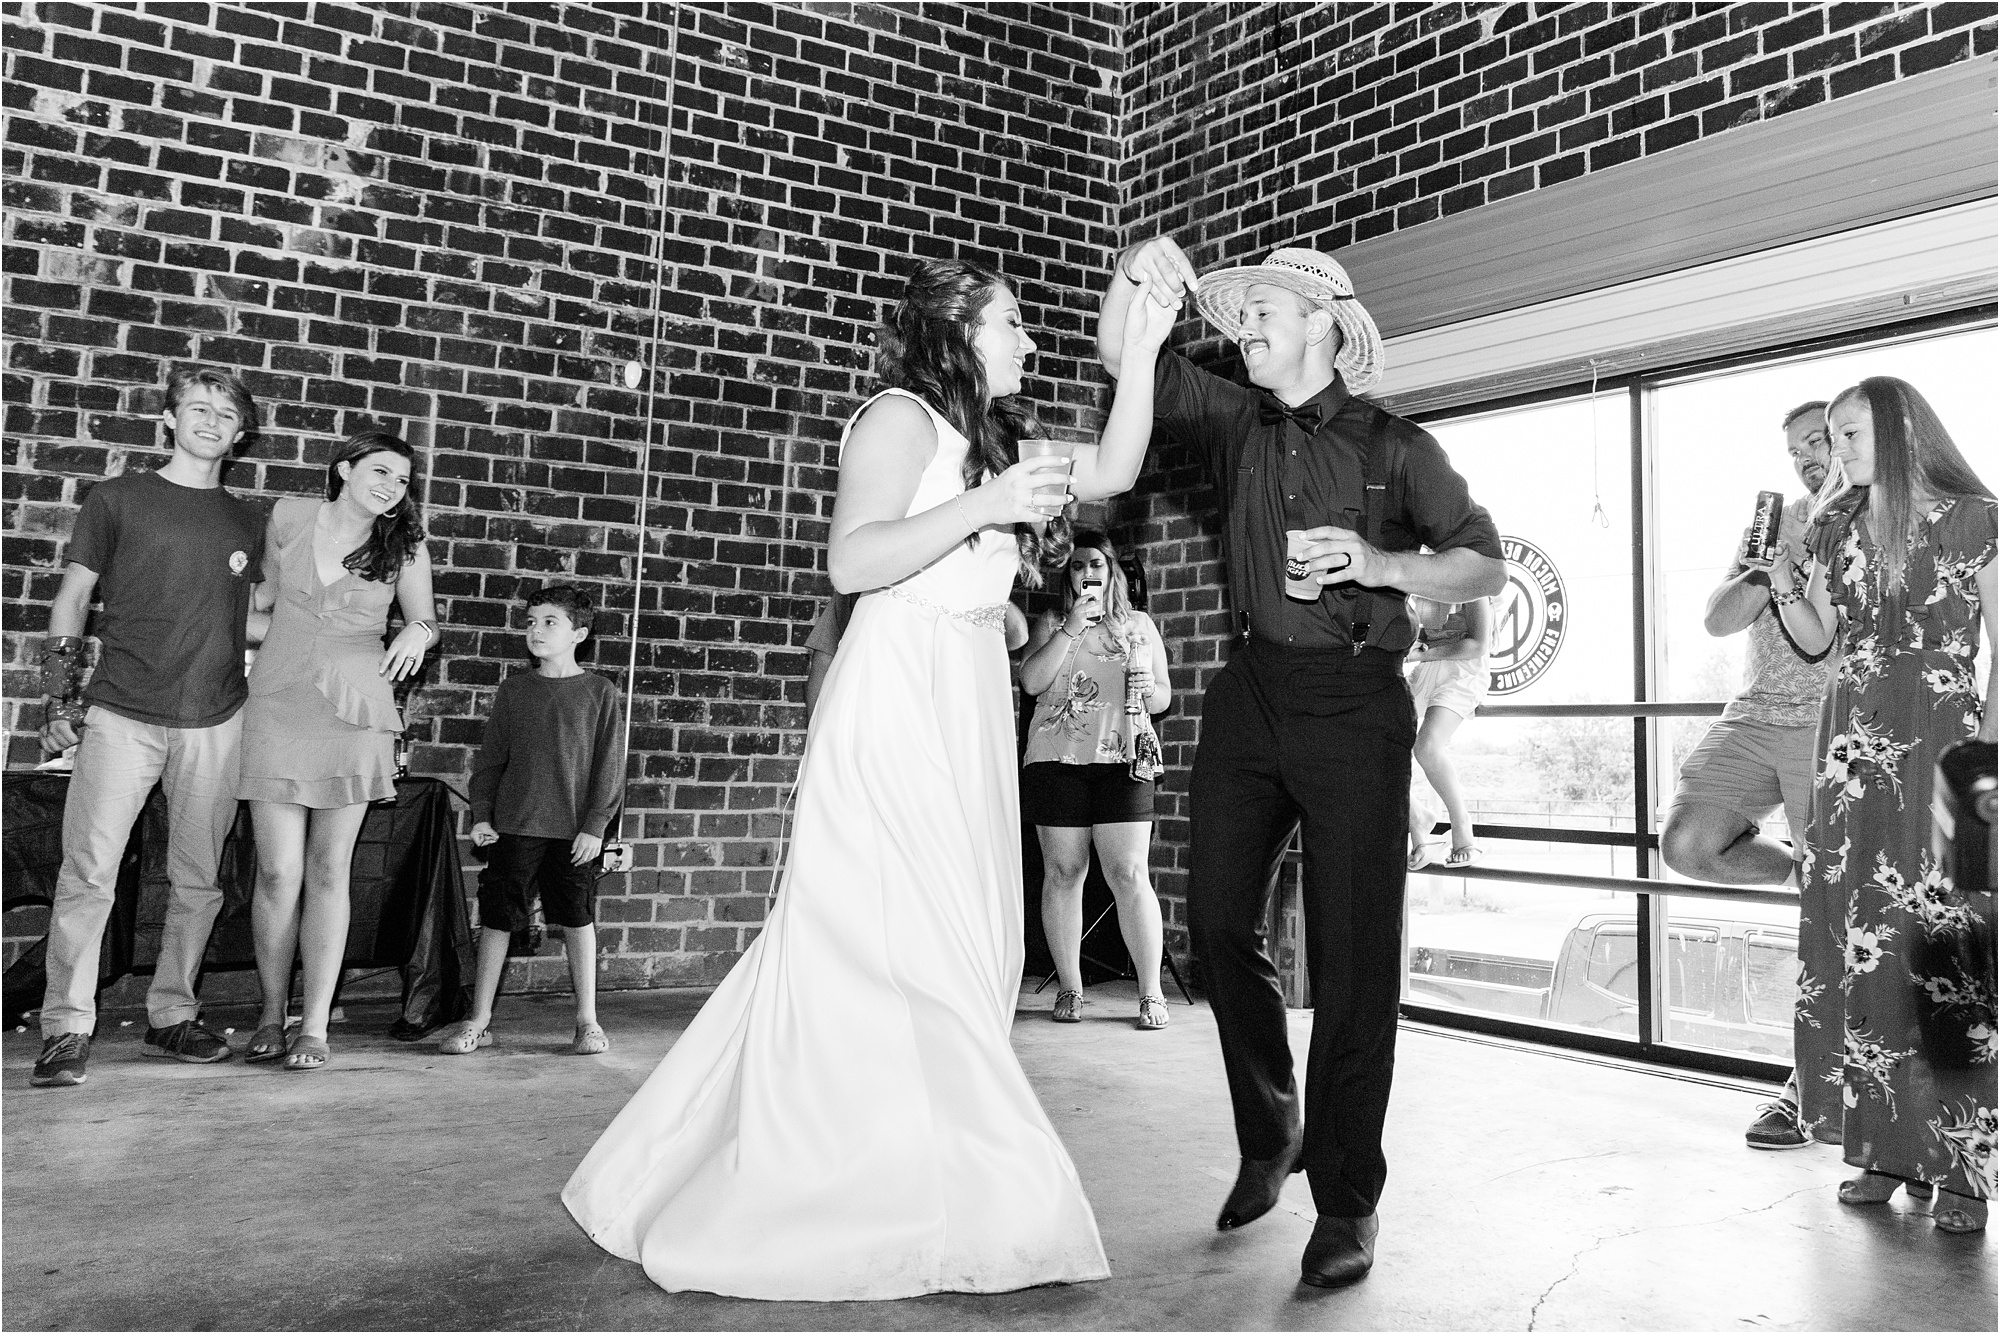 summer wedding reception macon beer company dancing